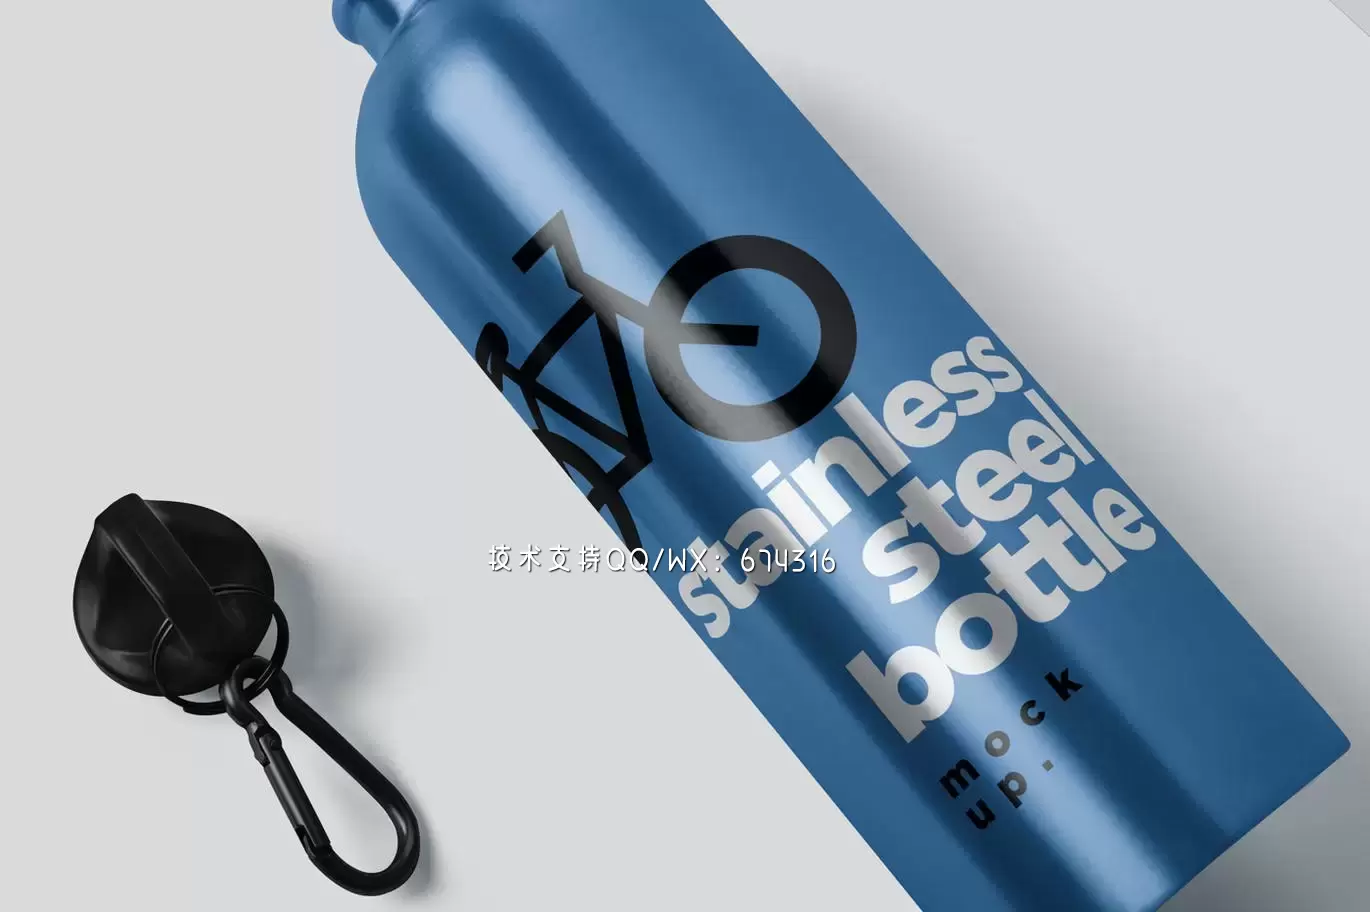 时尚高端高品质的热水瓶包装设计VI样机展示模型mockups免费下载插图3